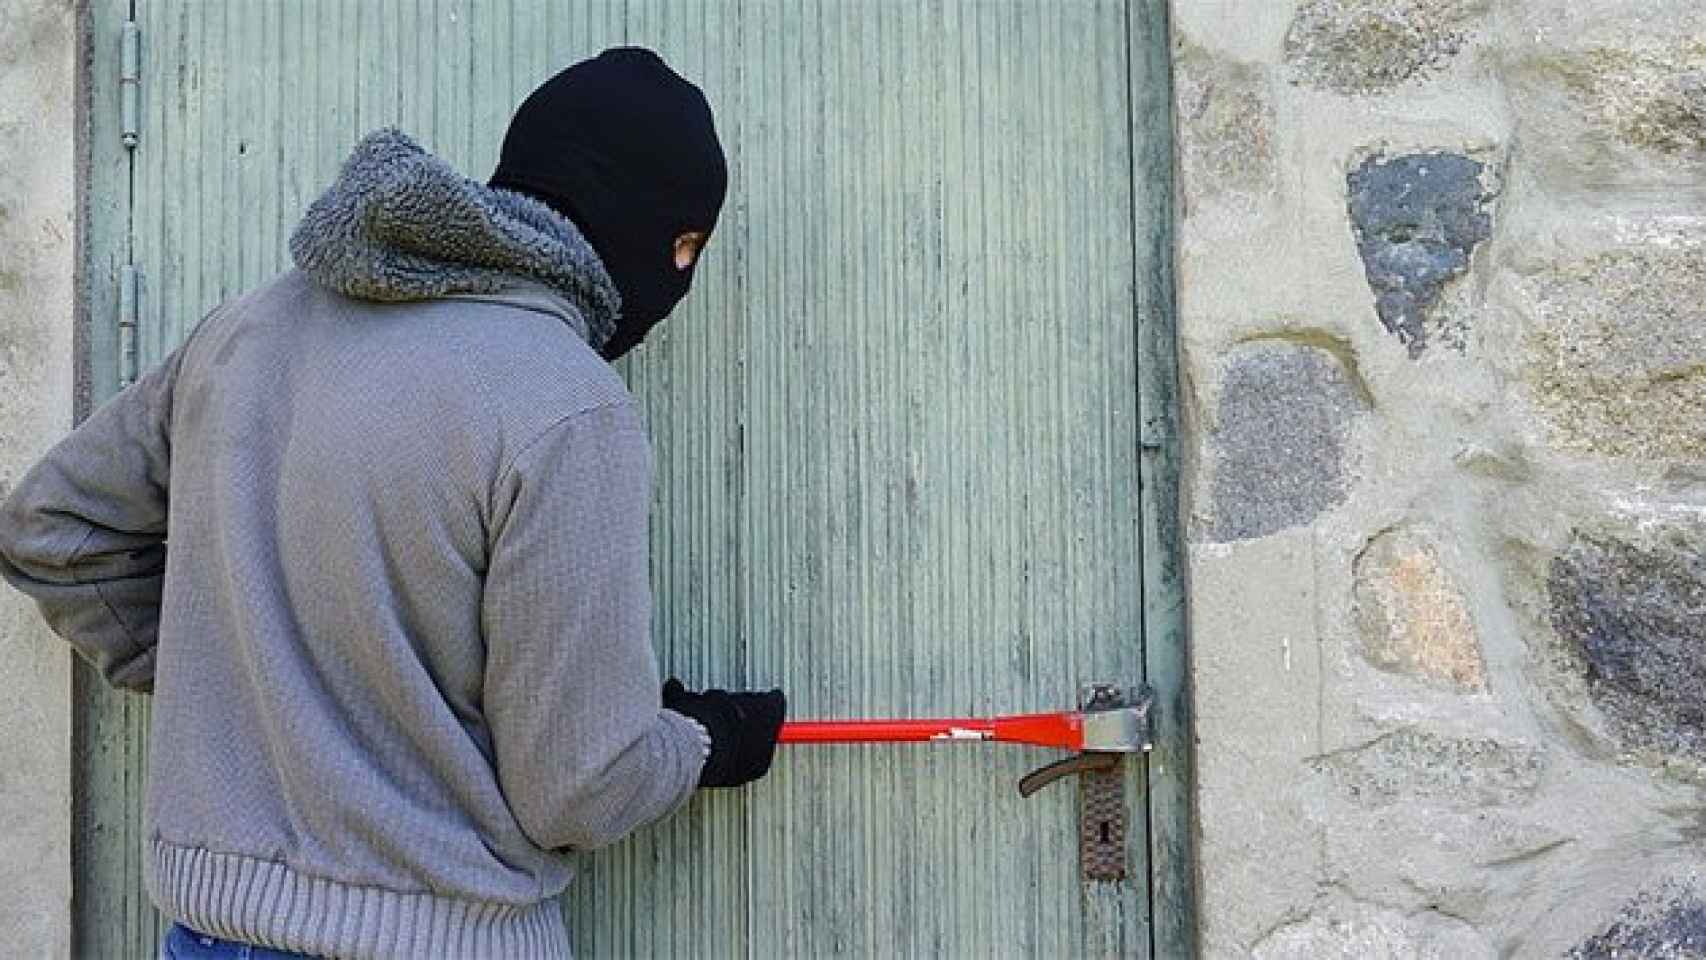 Cae un ladrón de casas tras una espectacular persecución en Sant Cugat